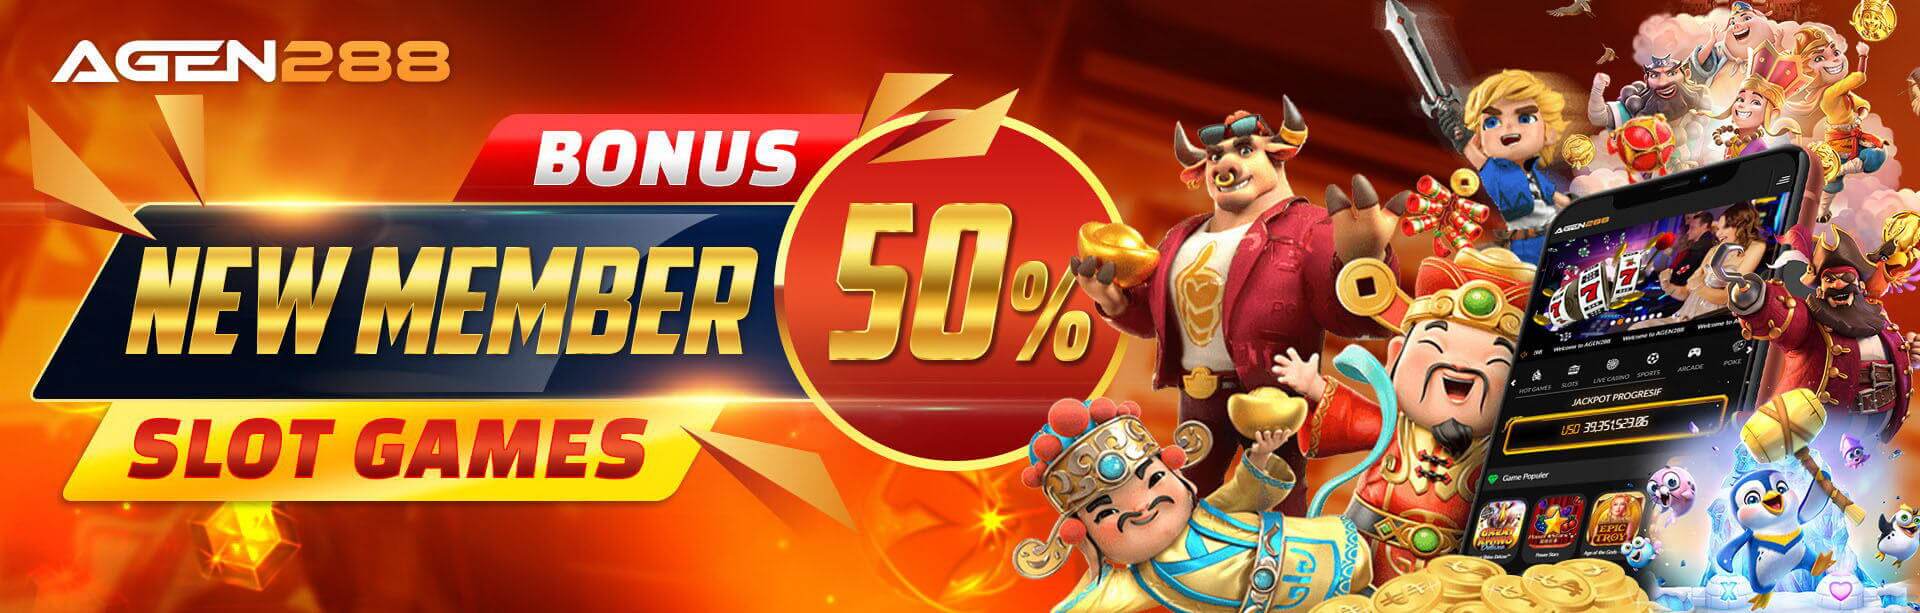 BONUS NEW MEMBER 50% SLOT GAMES